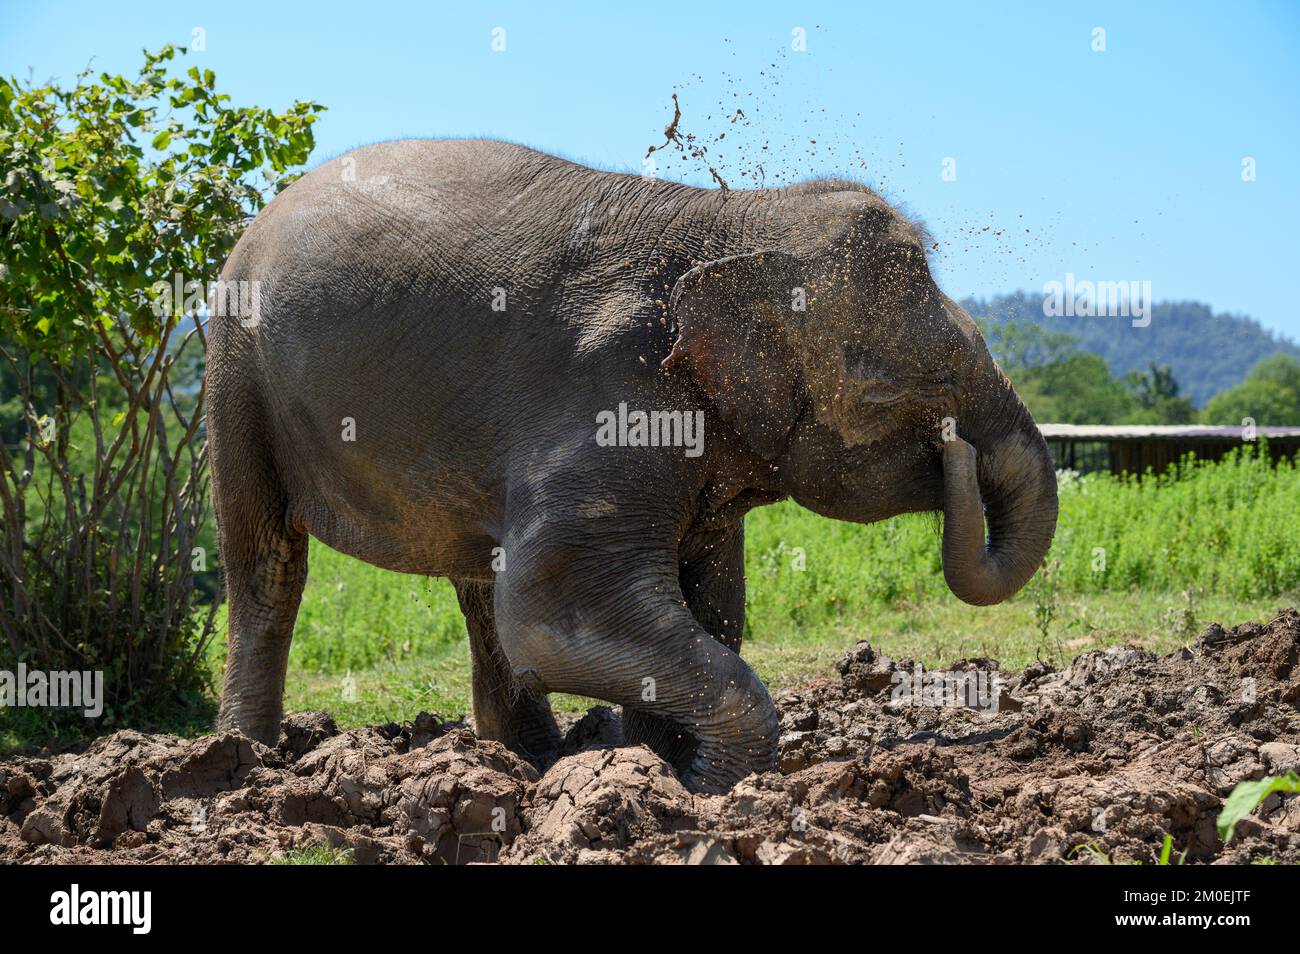 Ein asiatischer Elefant, der im Schlamm steht, gießt schmutziges Wasser aus seinem Stamm auf sich selbst. Stockfoto